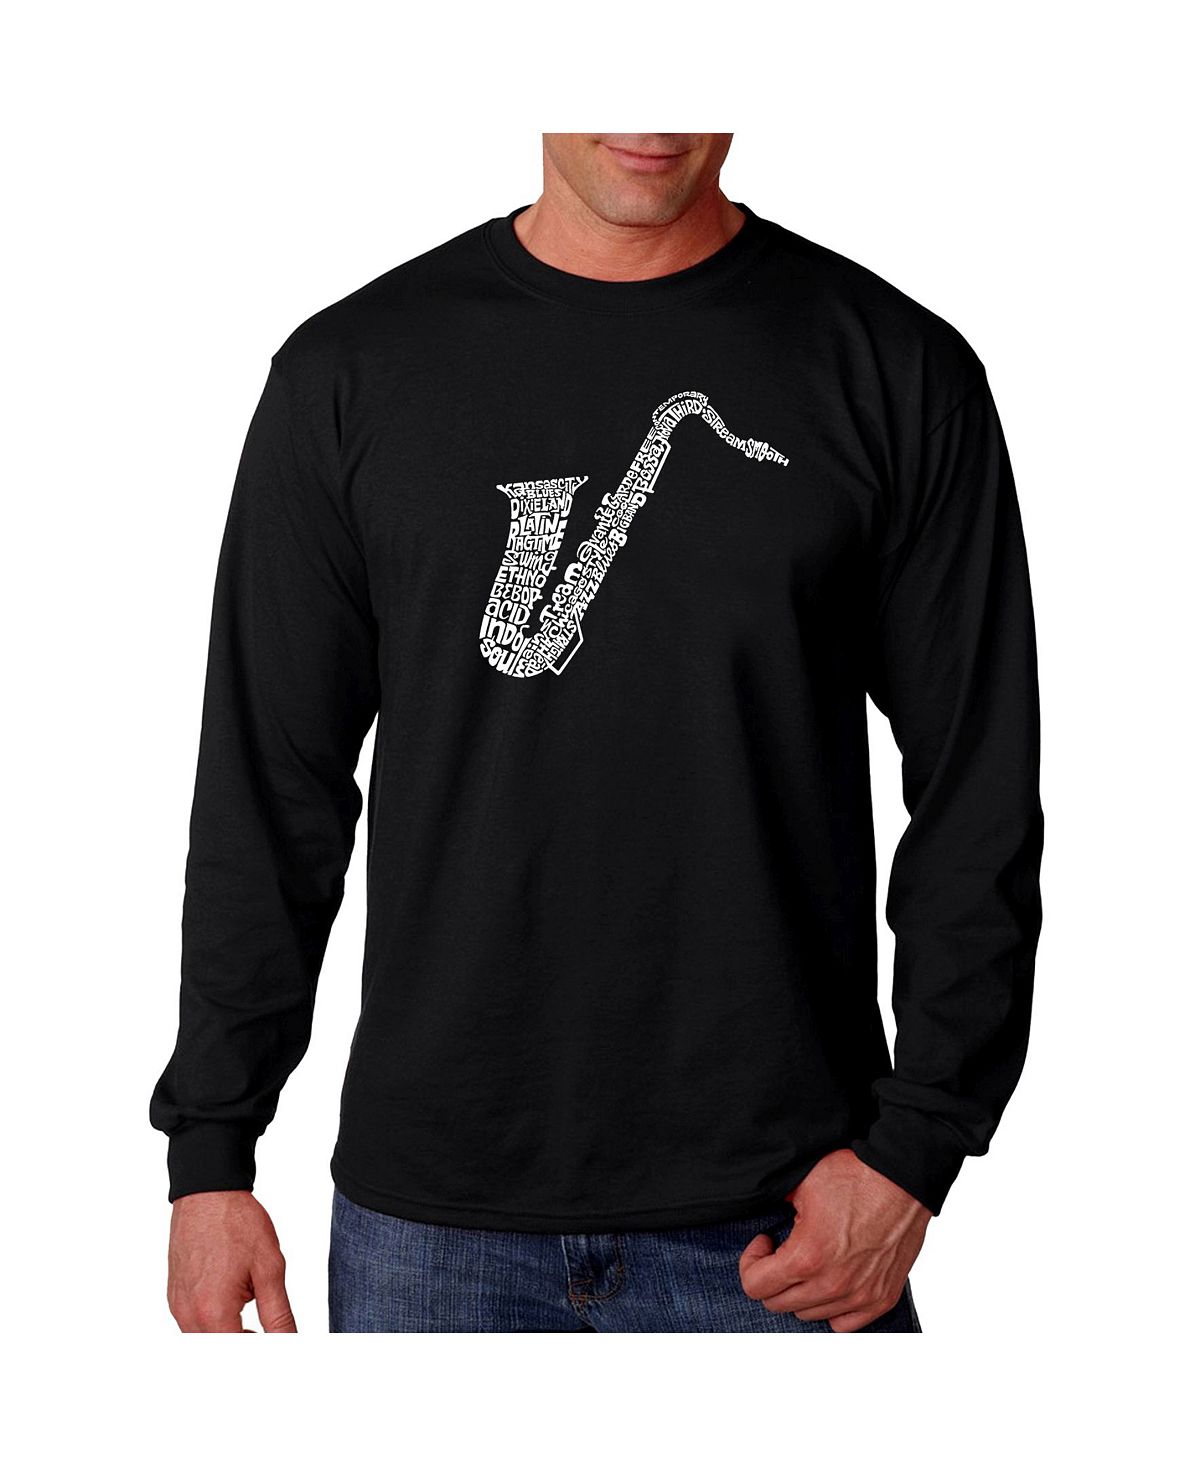 Мужская футболка с длинным рукавом word art - саксофон LA Pop Art, черный мужская футболка джаз музыкант jazz саксофон m зеленый